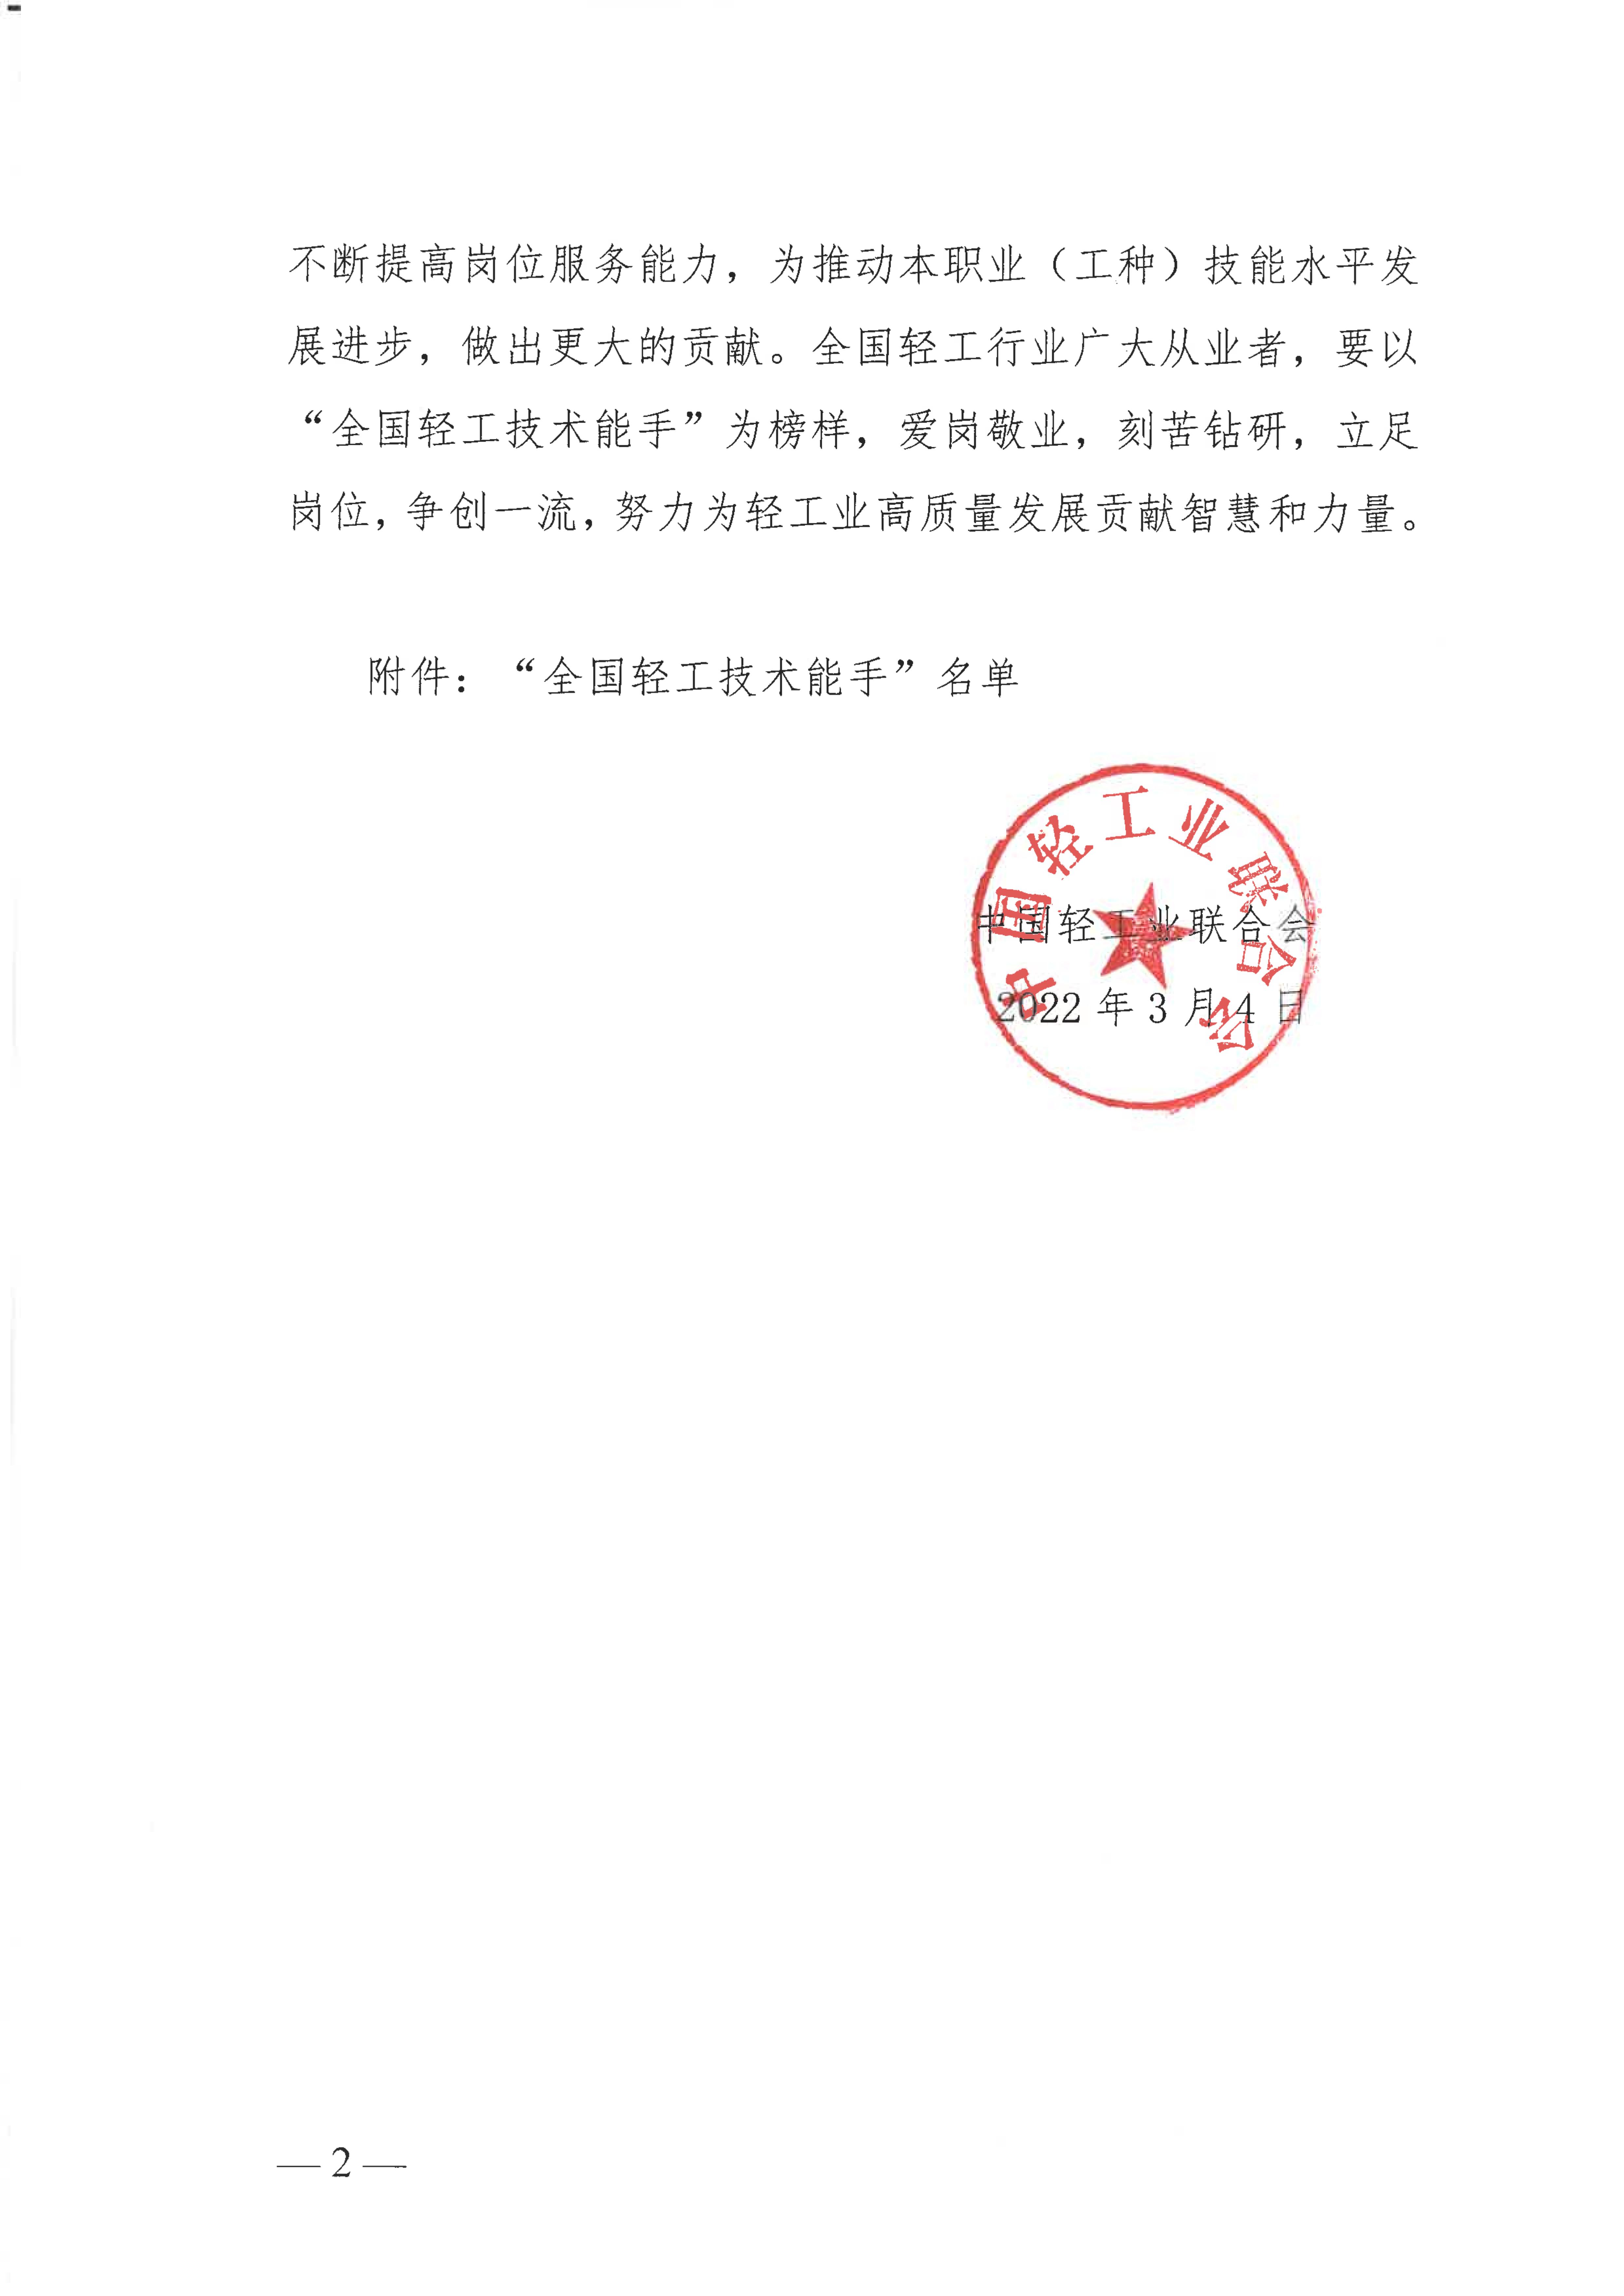 关于授予张宇鹏等252名同志“全国轻工技术能手”荣誉称号的决定_01.jpg